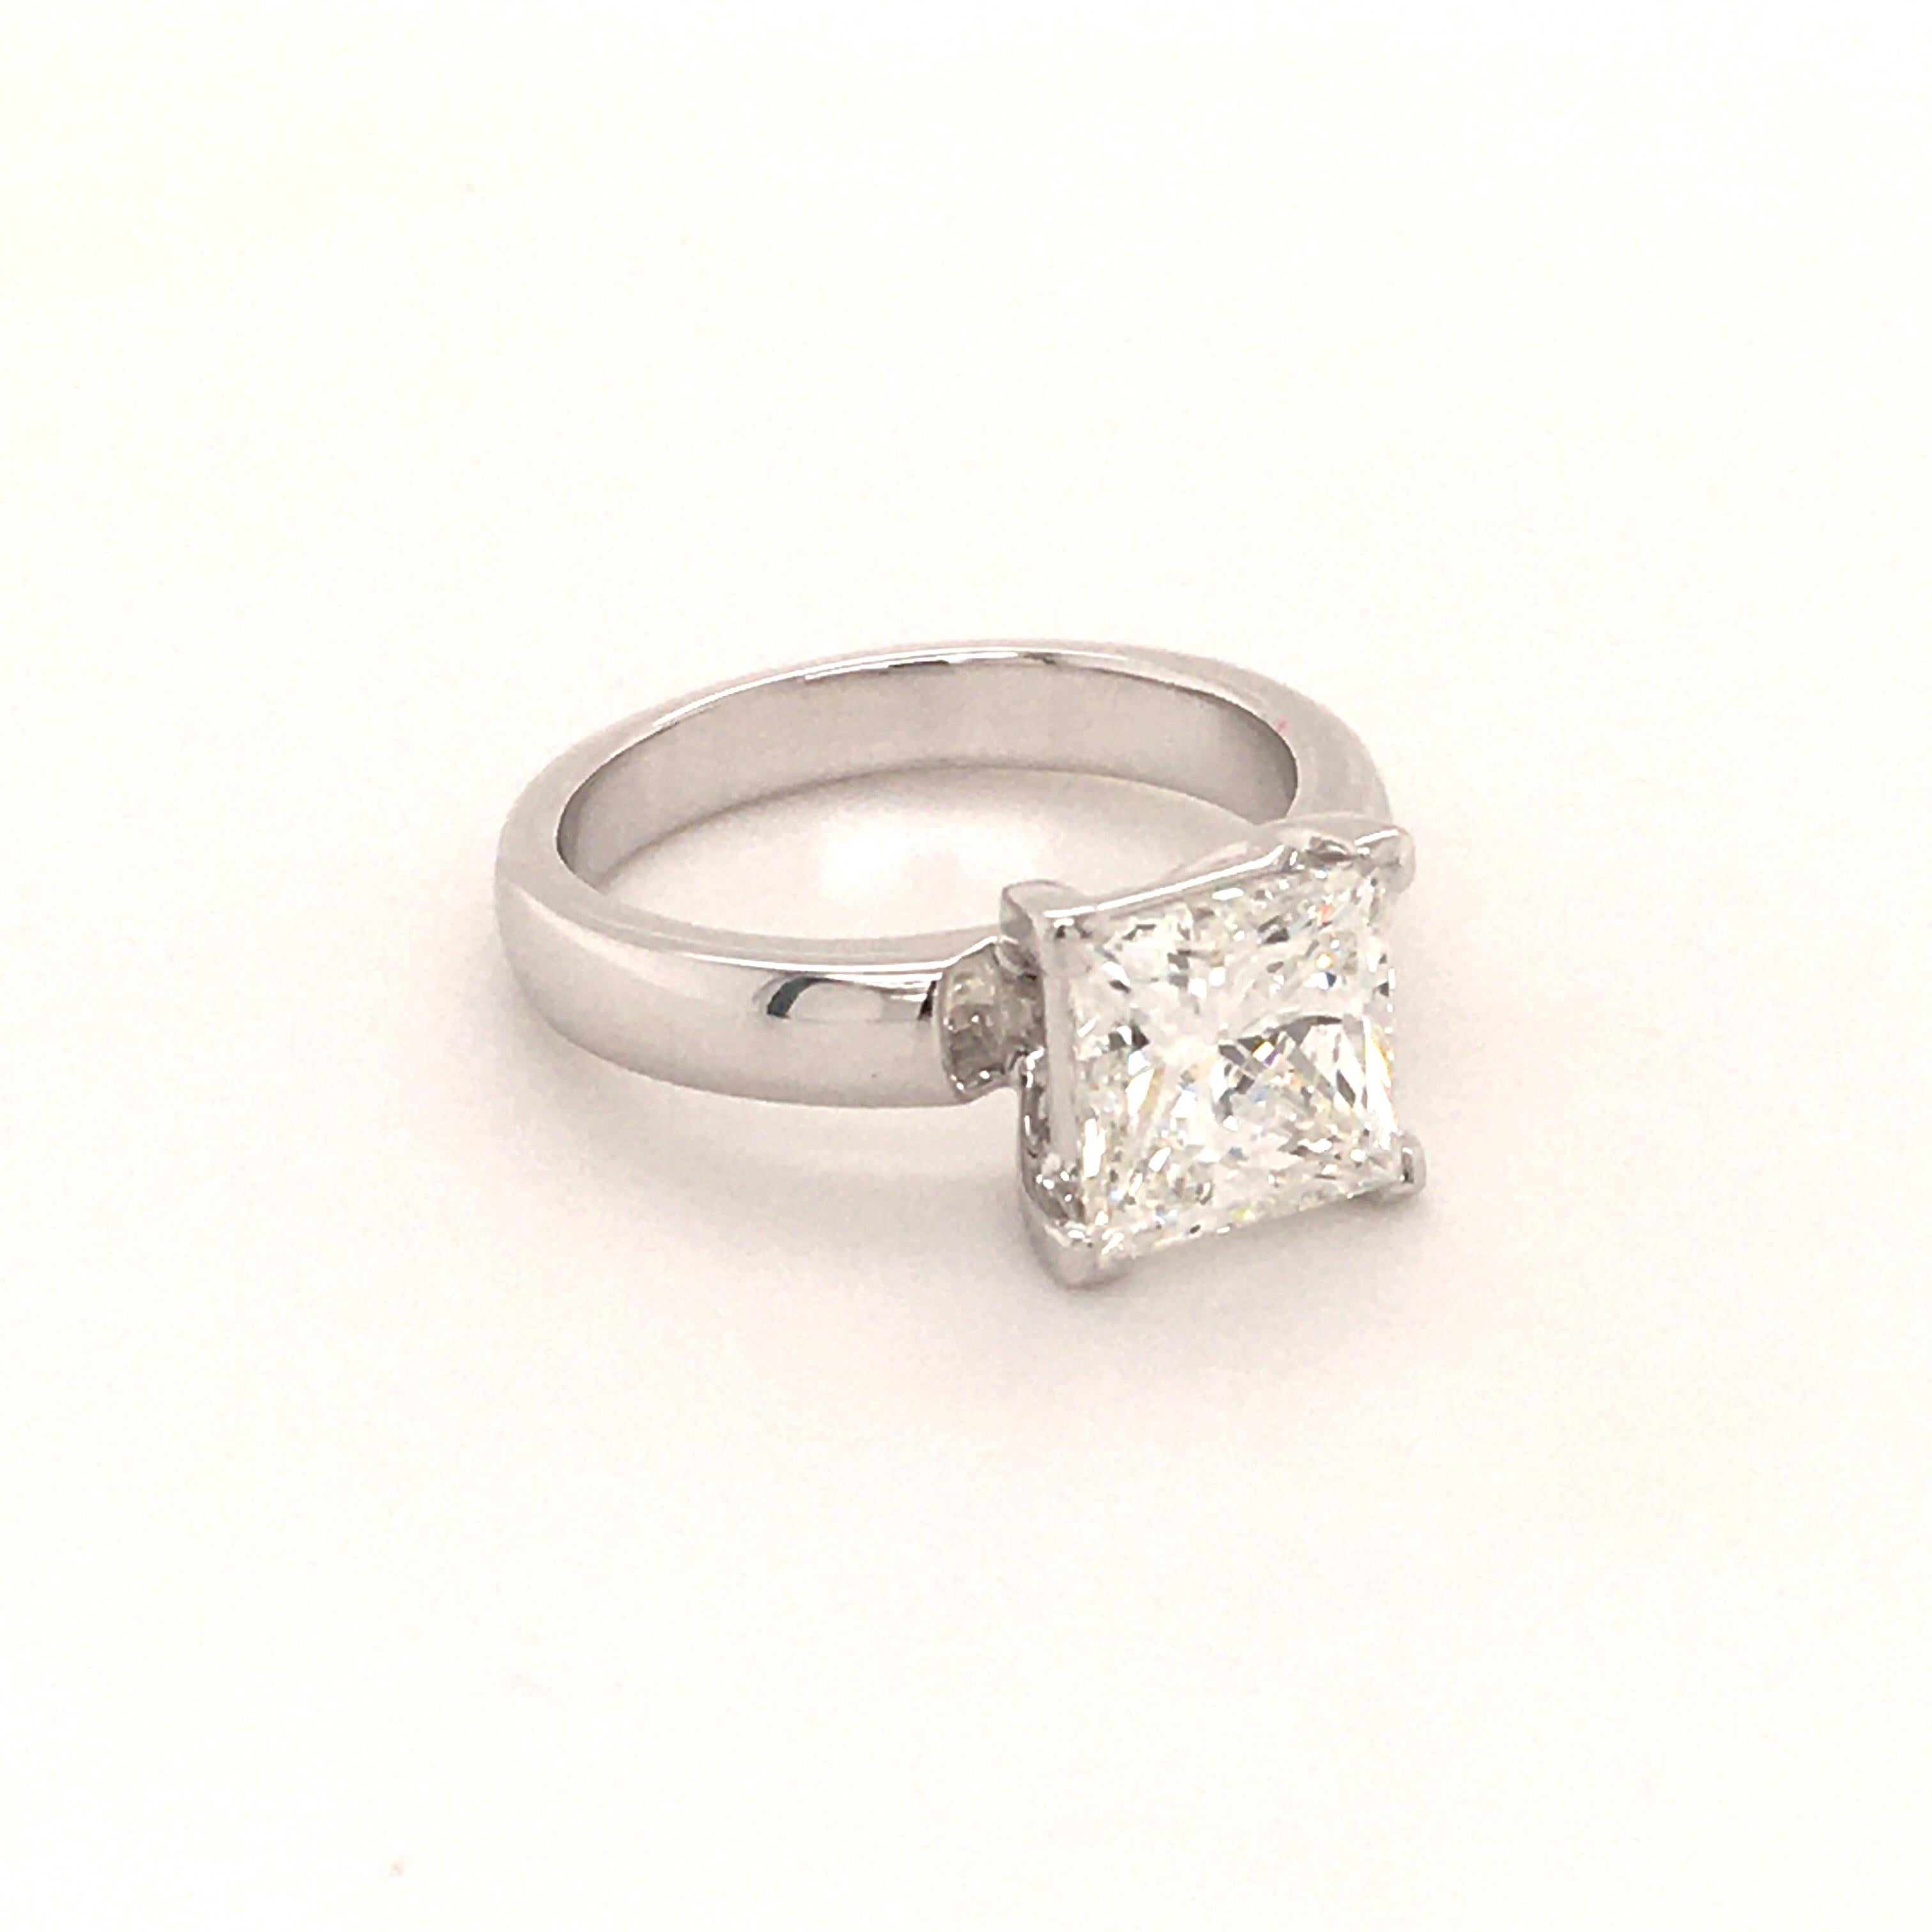 Women's or Men's 2.03 Carat Princess Cut Diamond Ring in 18 Karat White Gold by Bucherer